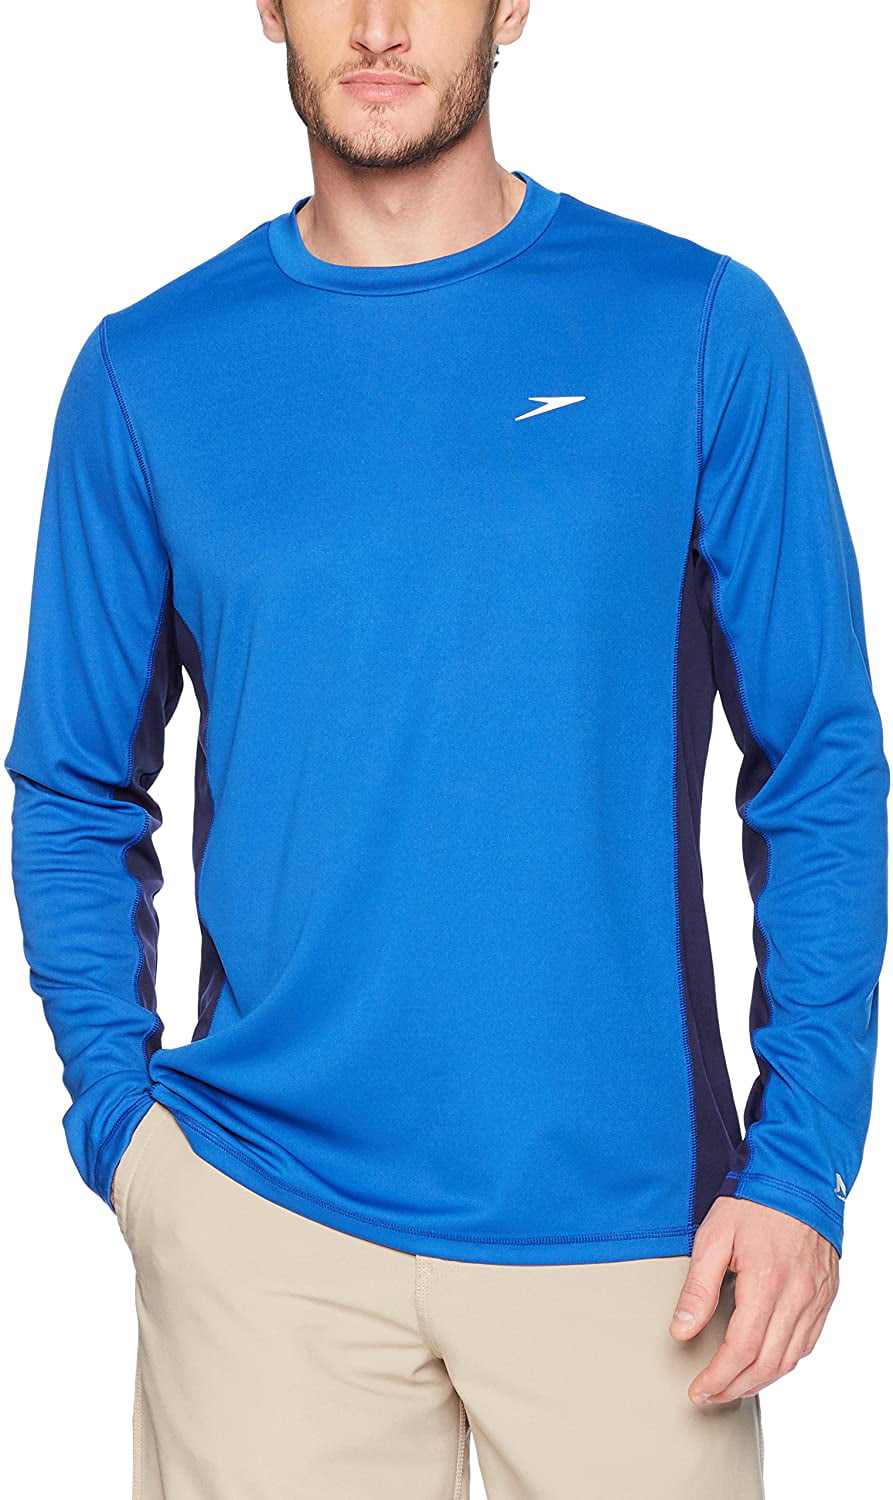 Speedo - Speedo Mens UV Swim Shirt Long Sleeve Longview Tee - Walmart ...